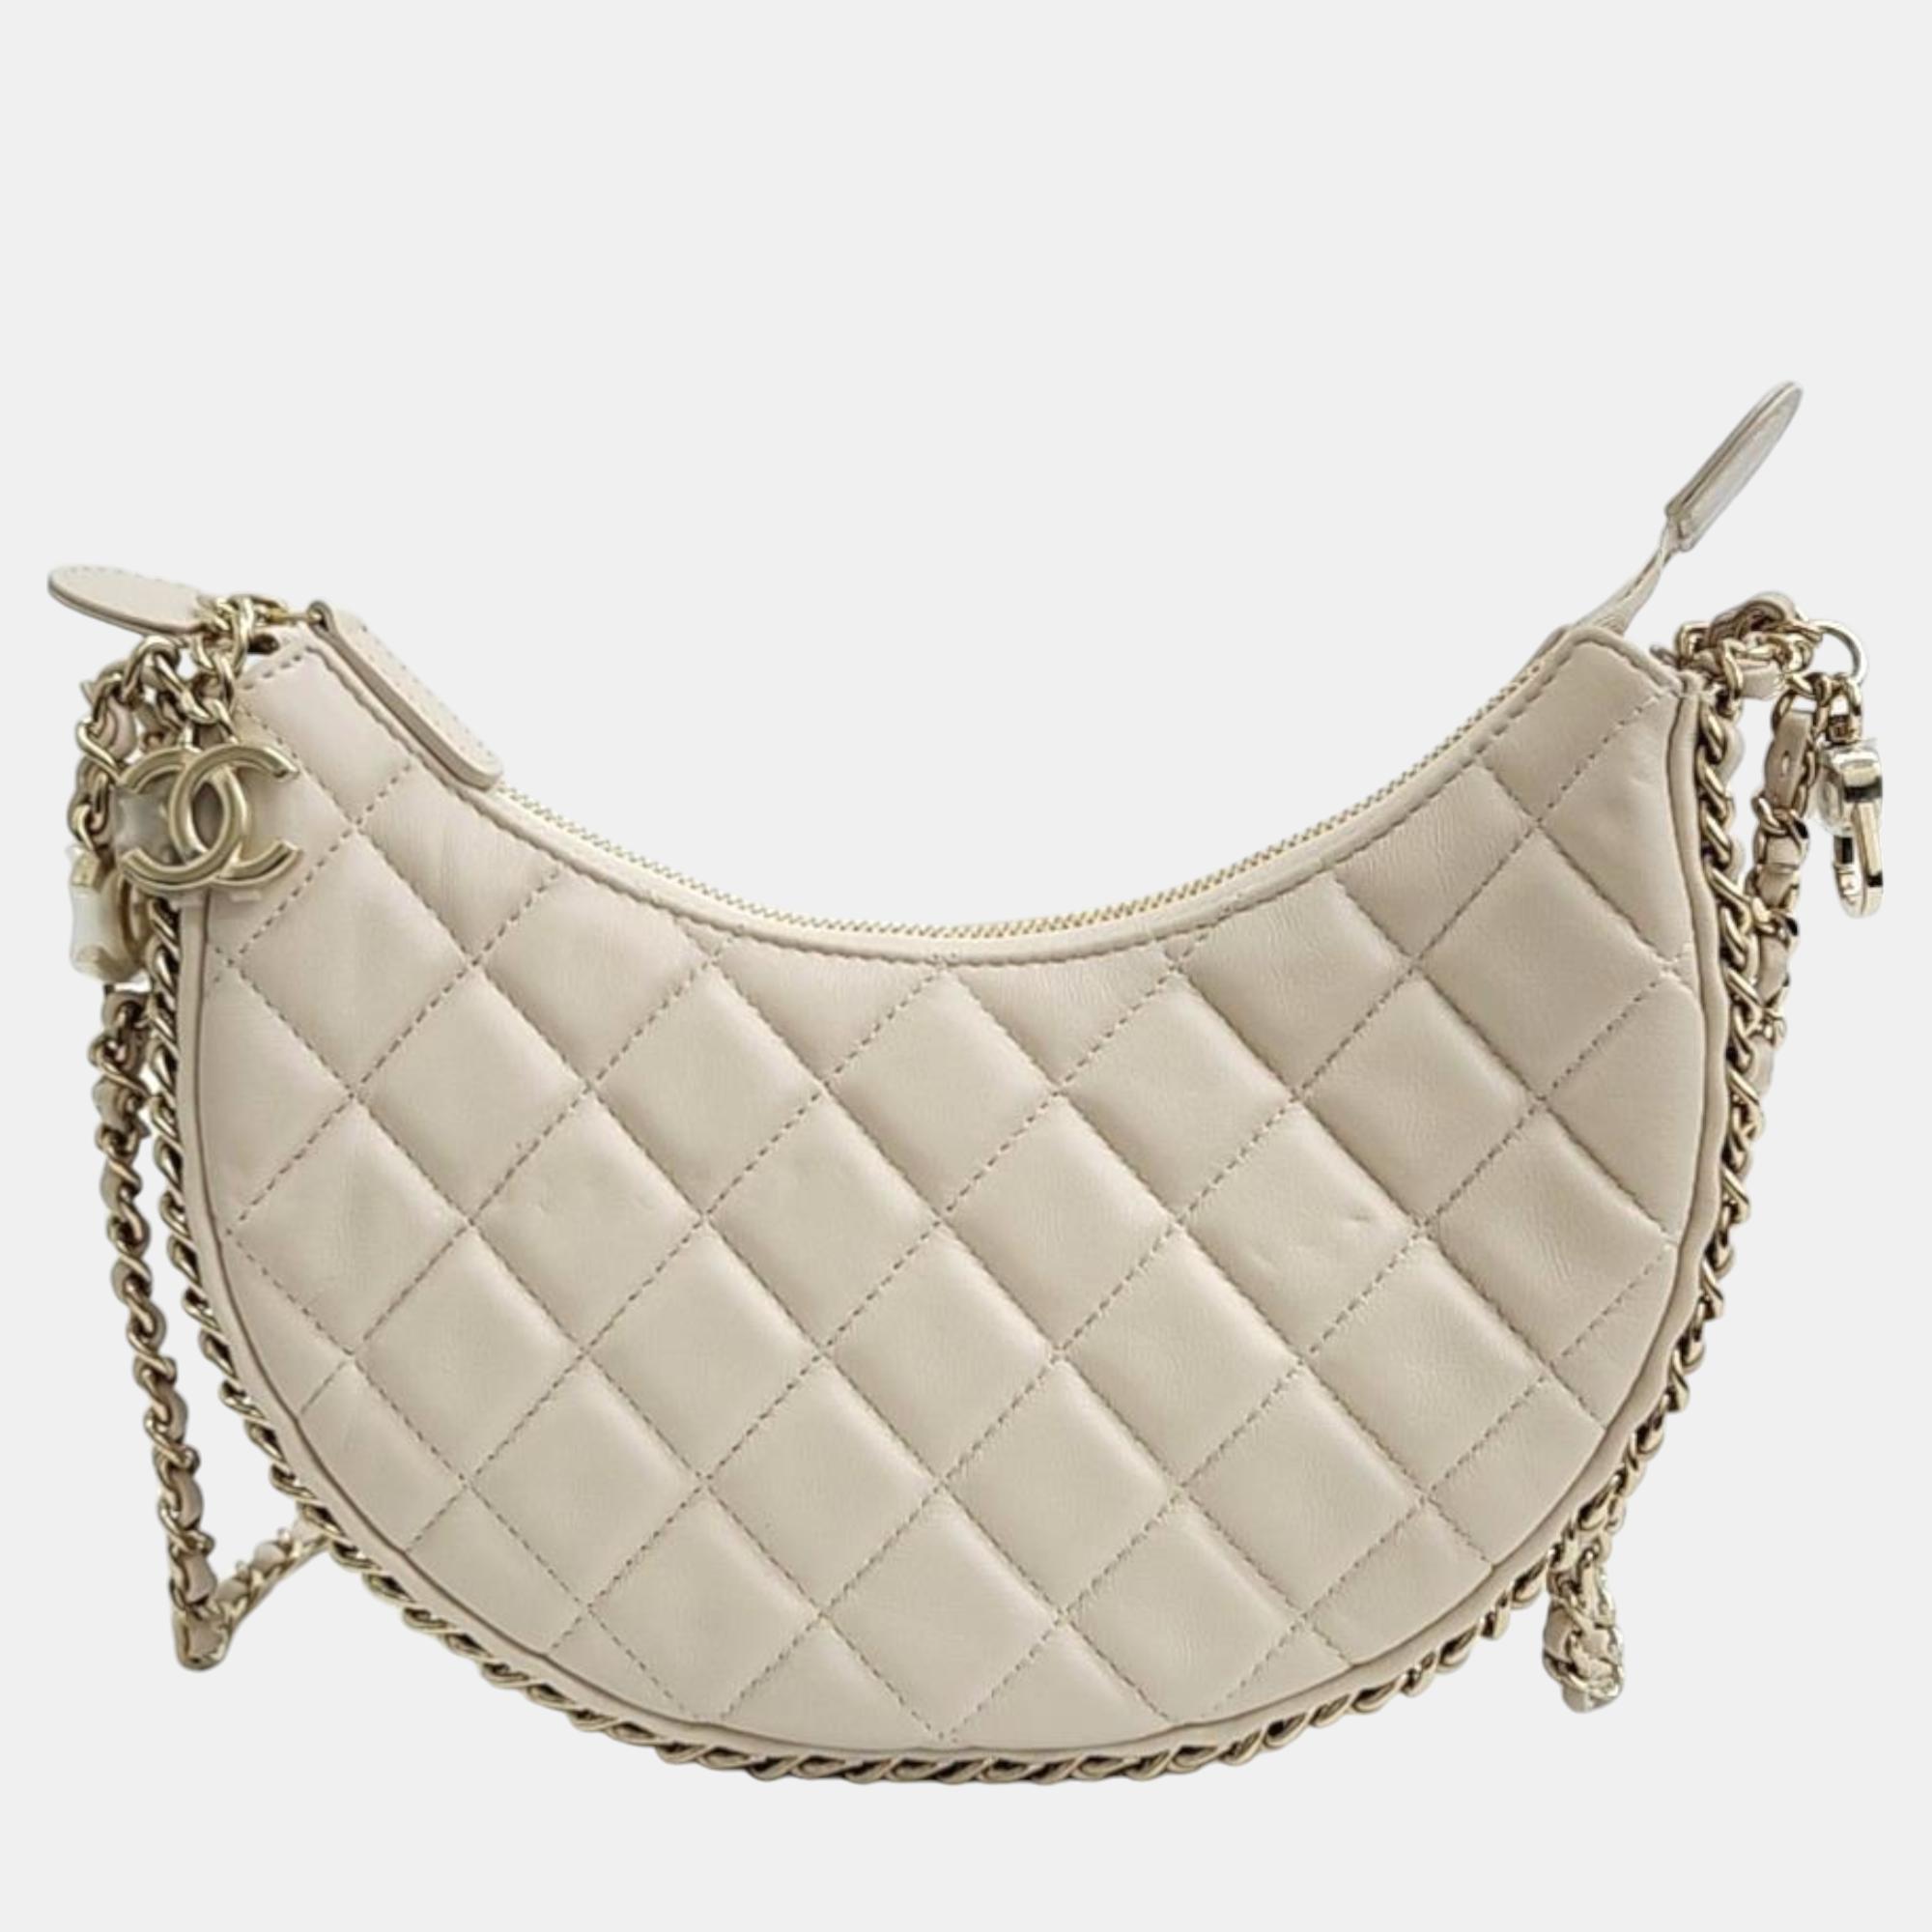 Chanel small hobo bag